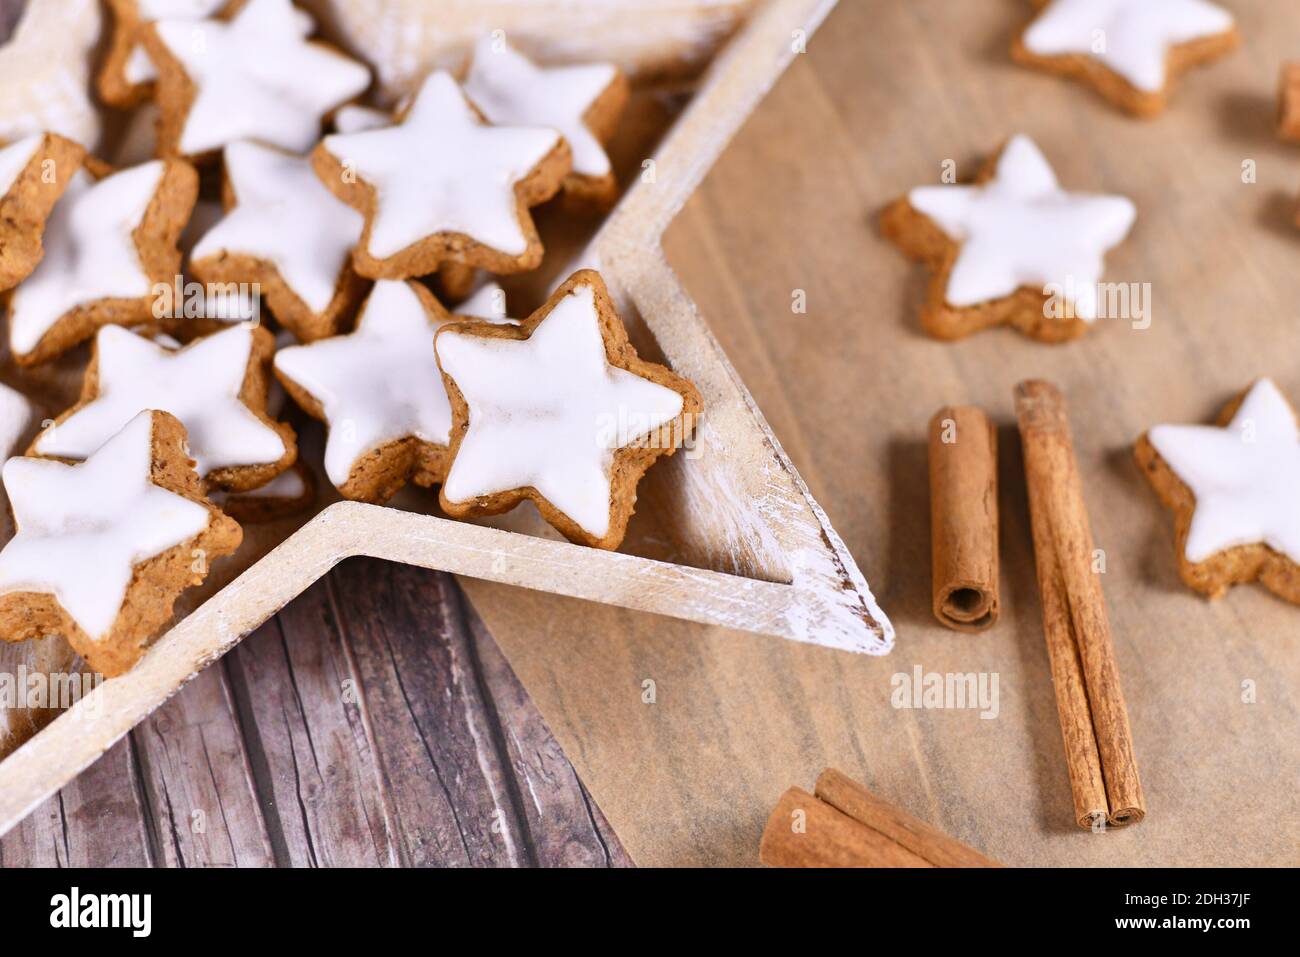 Deutsche sternförmige glasierte Weihnachts-Zimtsterne-Kekse, hergestellt aus Amondinen, Eiweiß, Zucker, Zimt und Mehl in sternförmiger Holzform Stockfoto